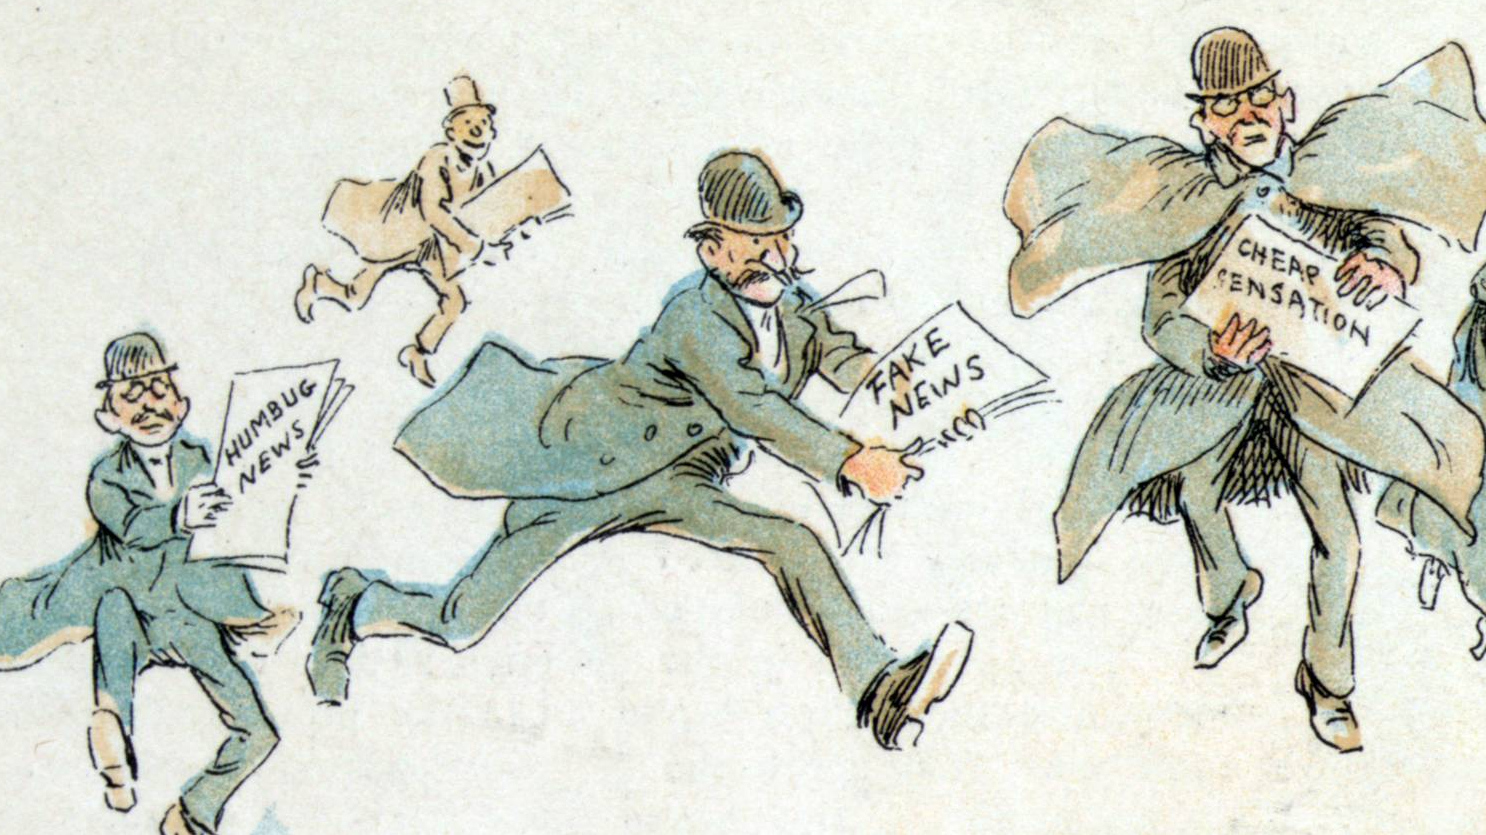 Фредерик Бурр Оппер. «Фейковые» новости. 1894